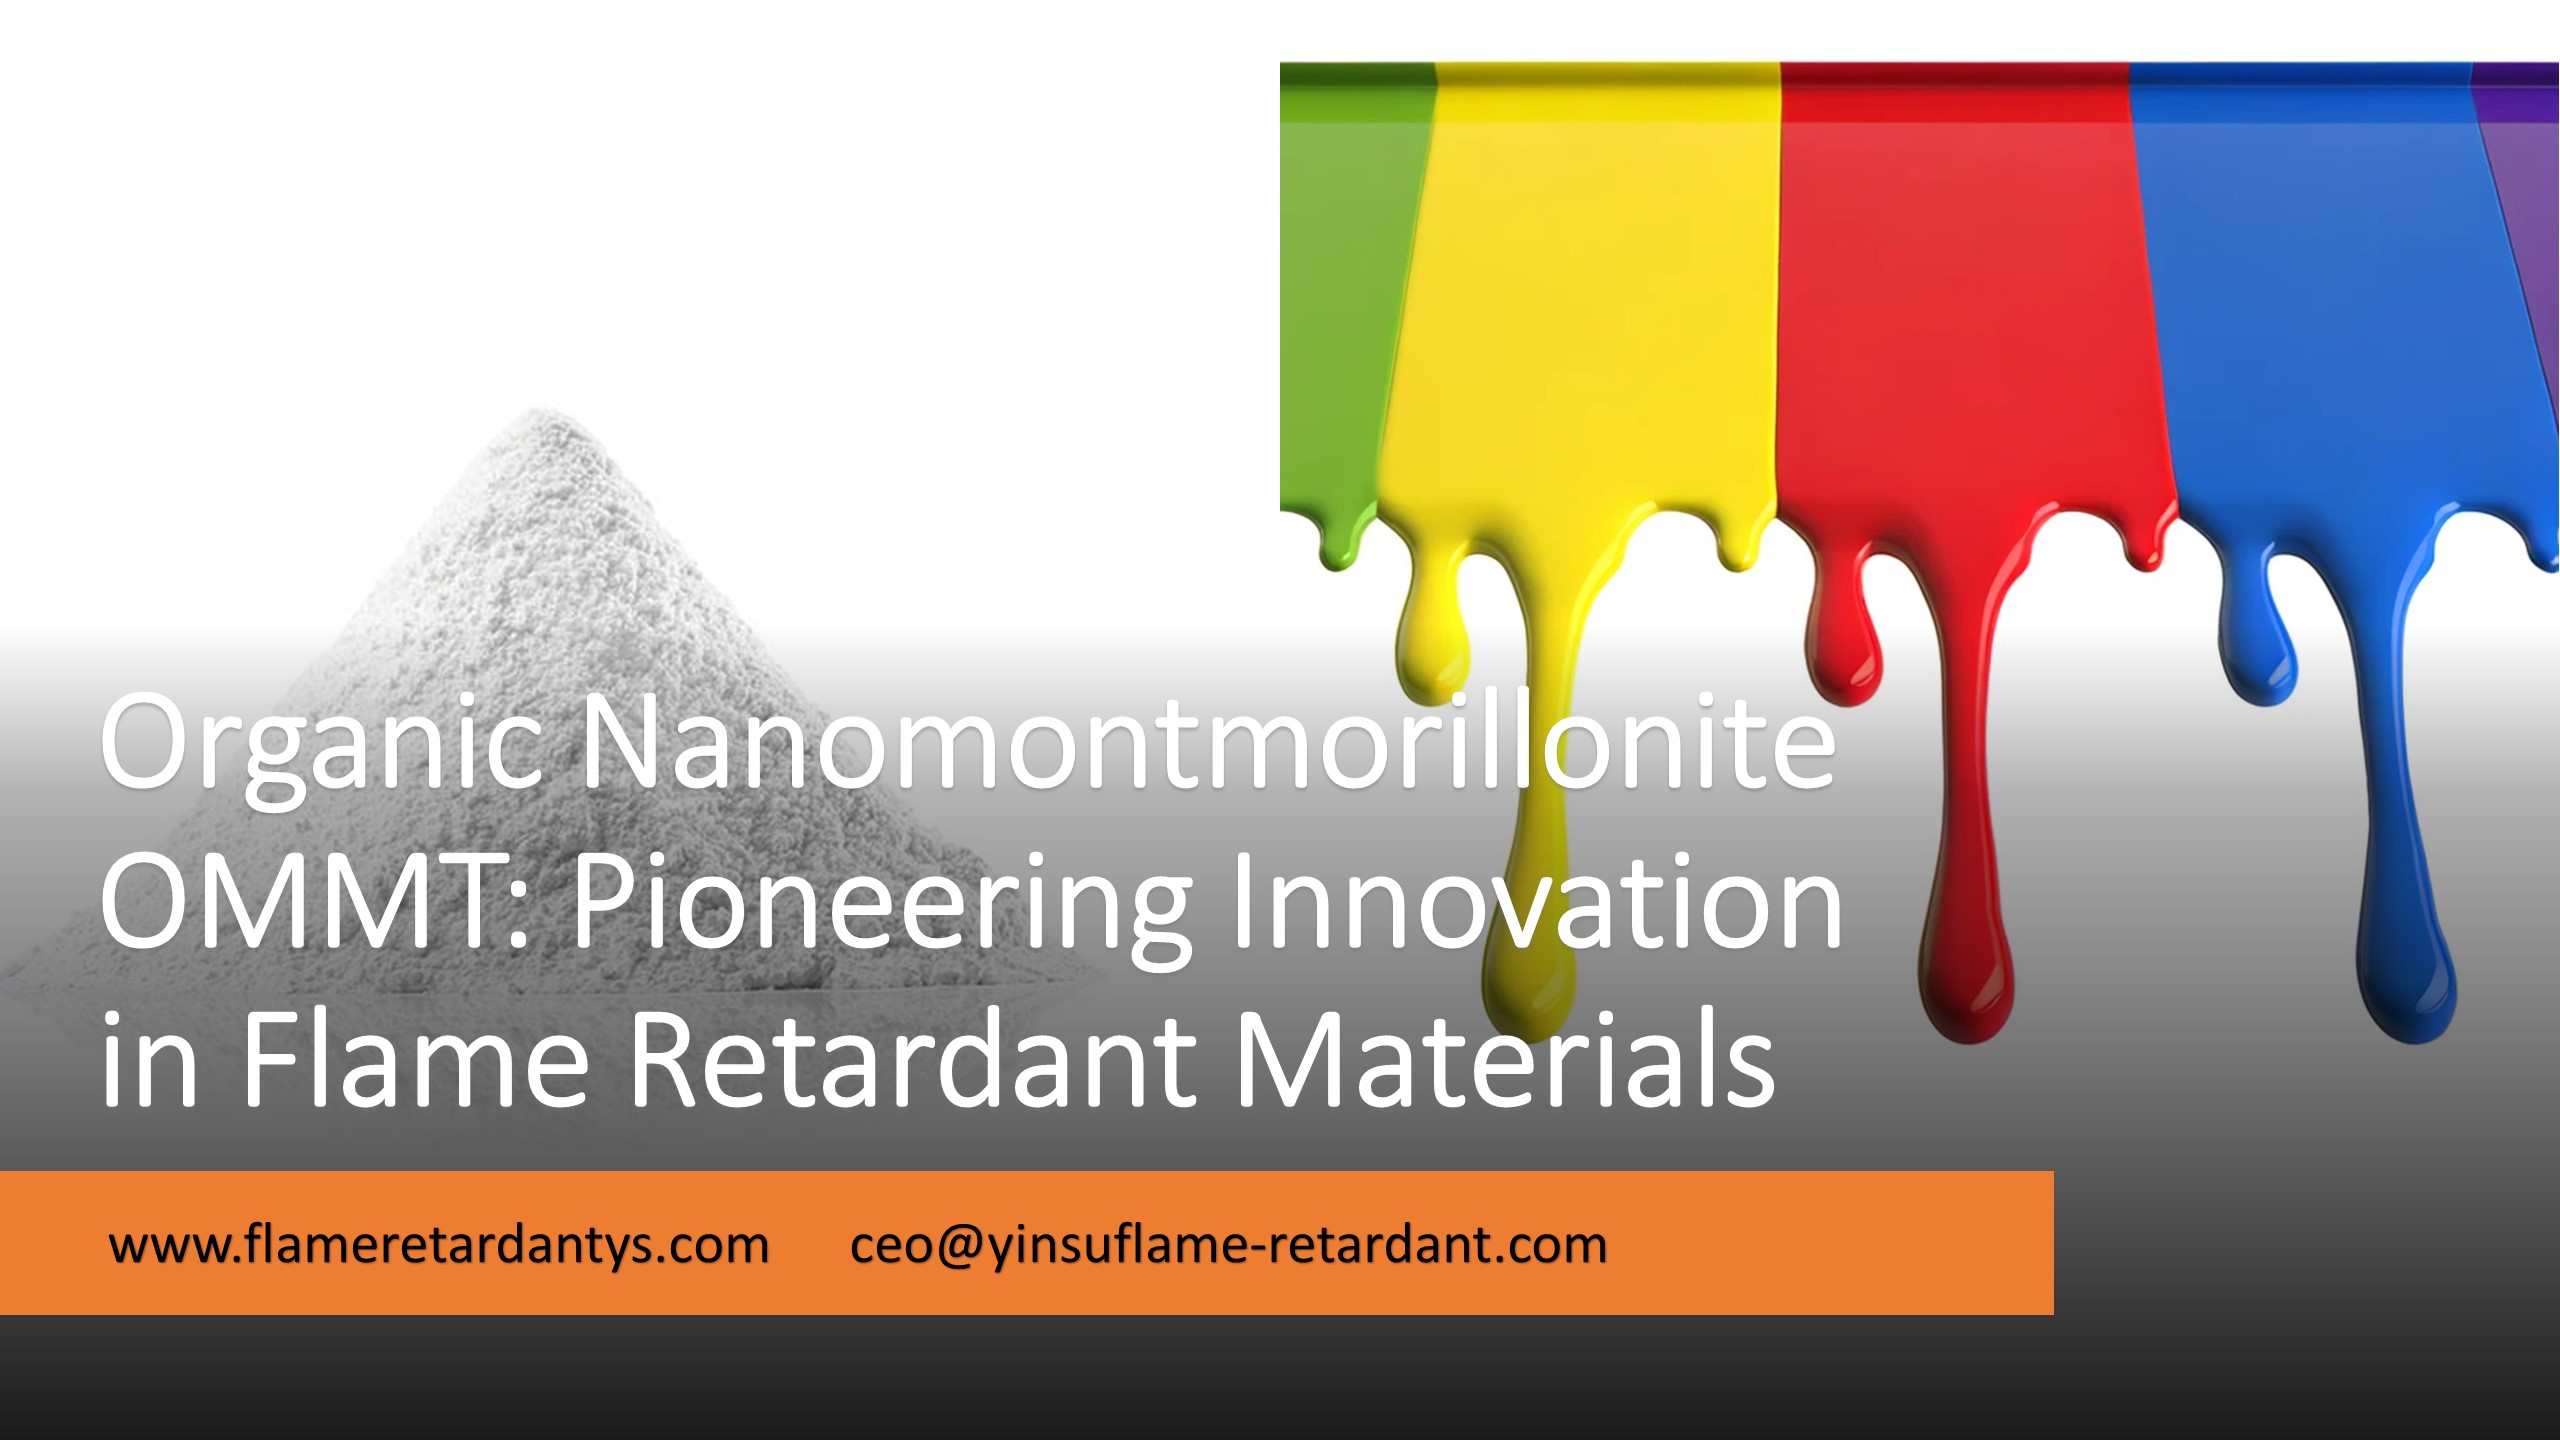 5.8 Innovación pionera en nanomontmorillonita orgánica en materiales retardantes de llama1